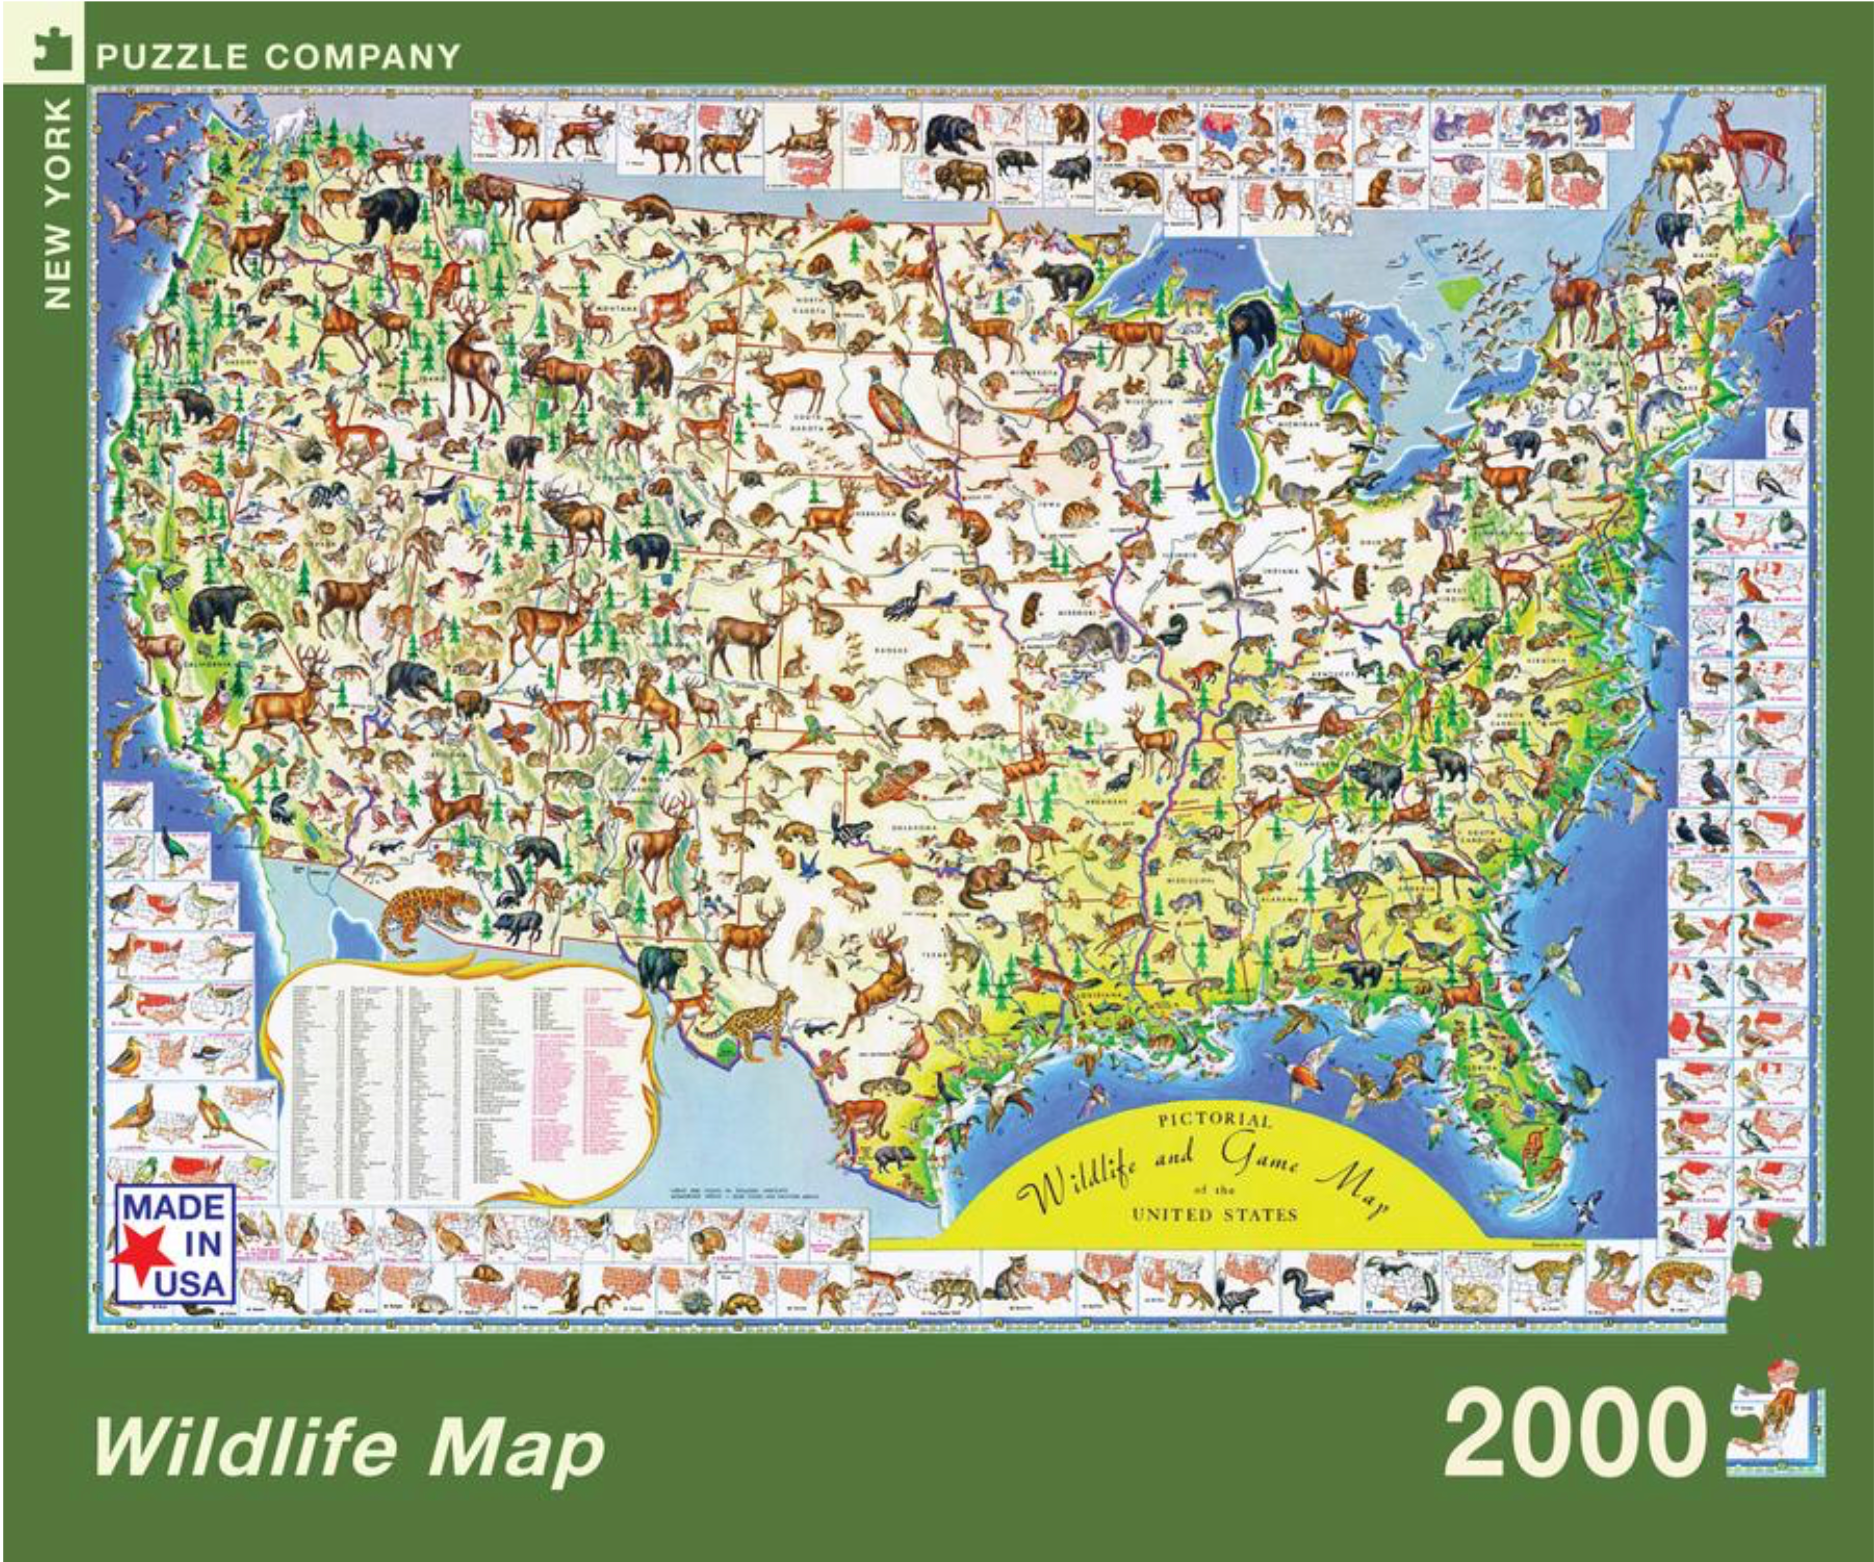 Wildlife Map (2000 pc puzzle)